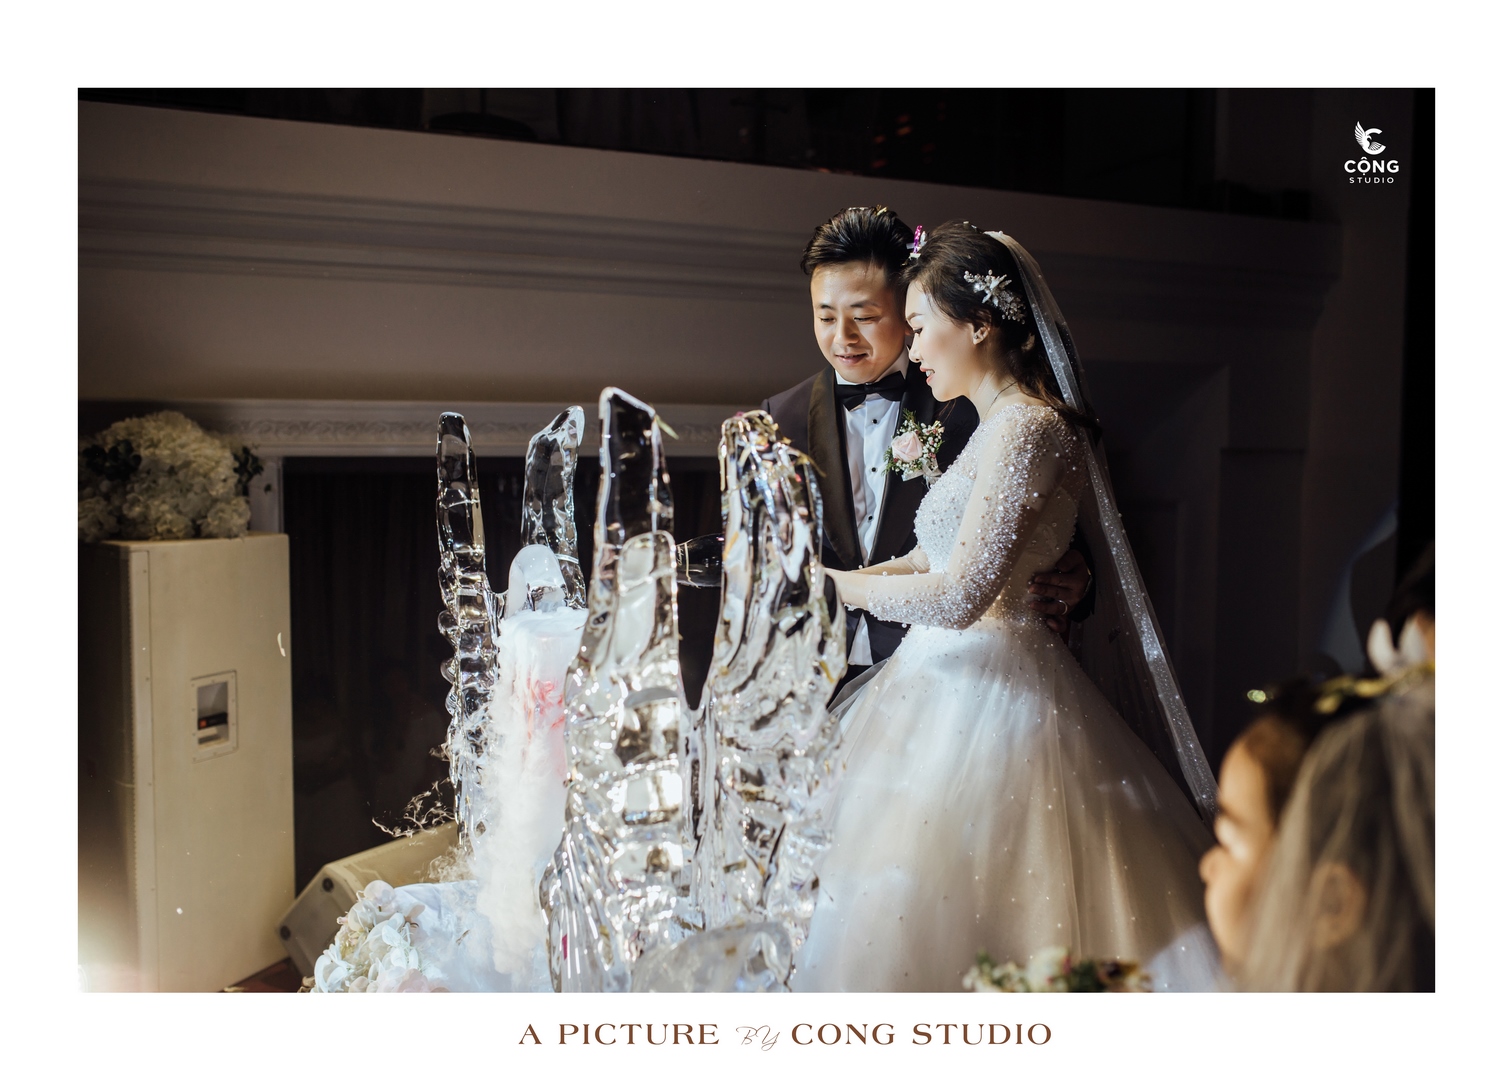 Chụp ảnh phóng sự cưới trọn gói giá rẻ, chất lượng hàng đầu hà nội (7) (Copy)